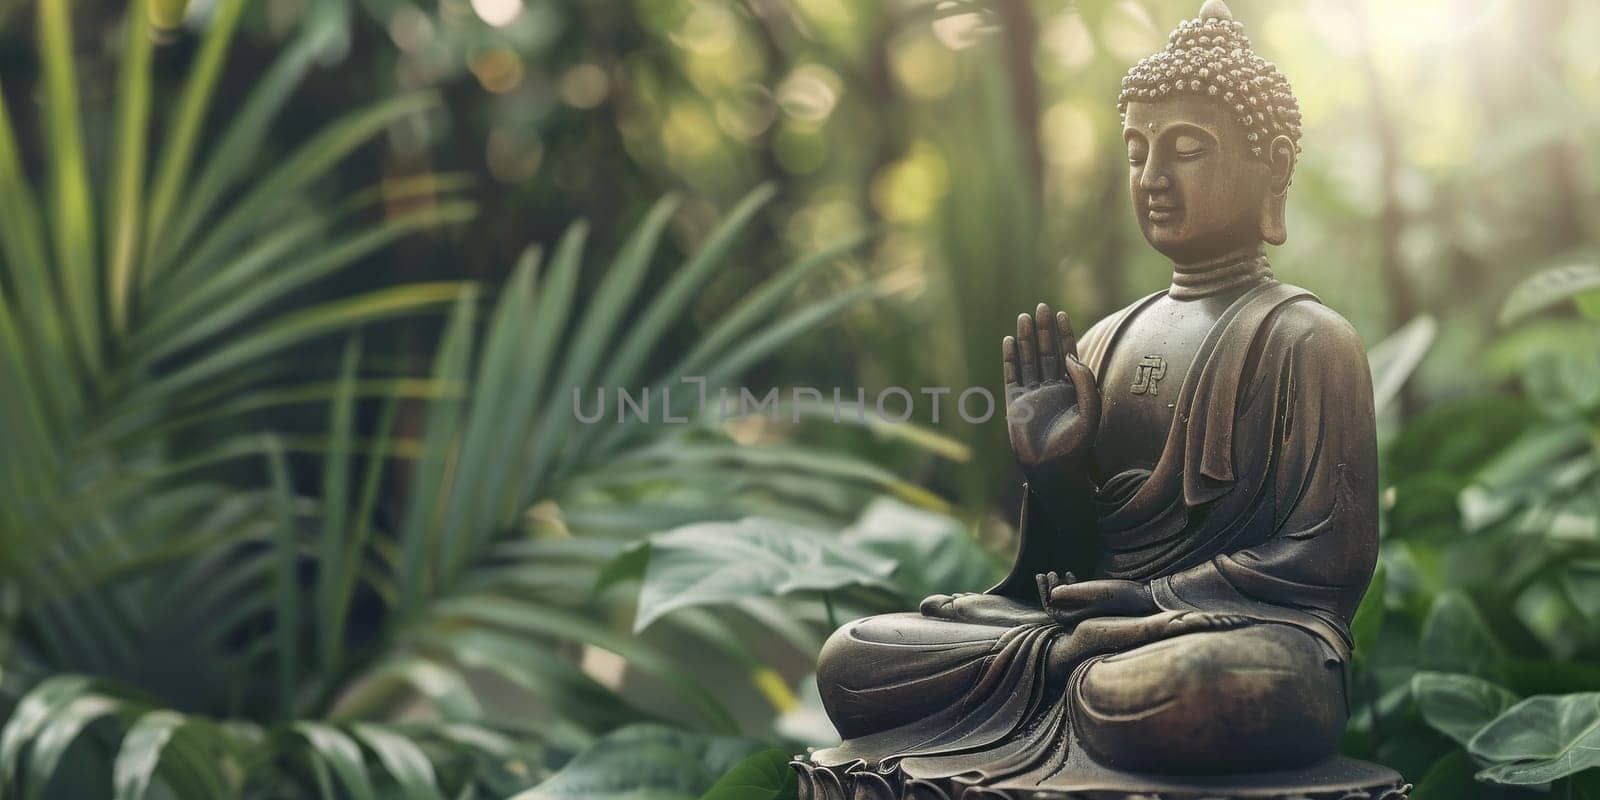 Meditative zen buddha statue with copy space jungle background by Kadula